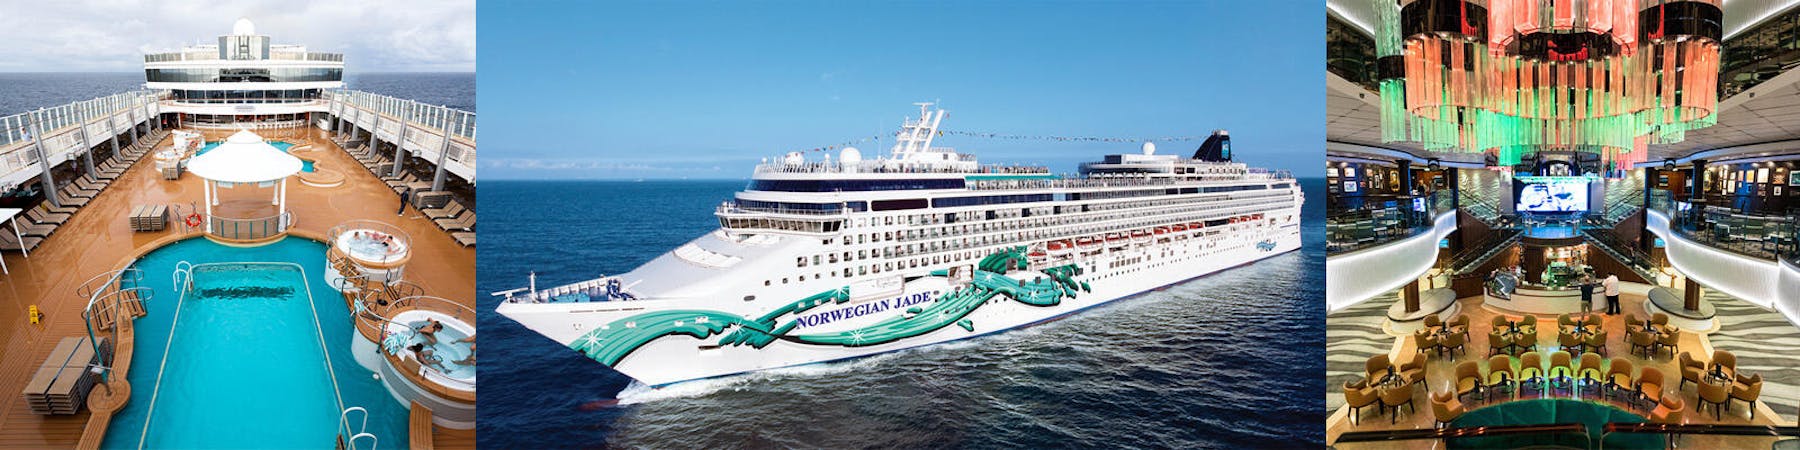 Norwegian Jade (Photo: Cruise Critic)